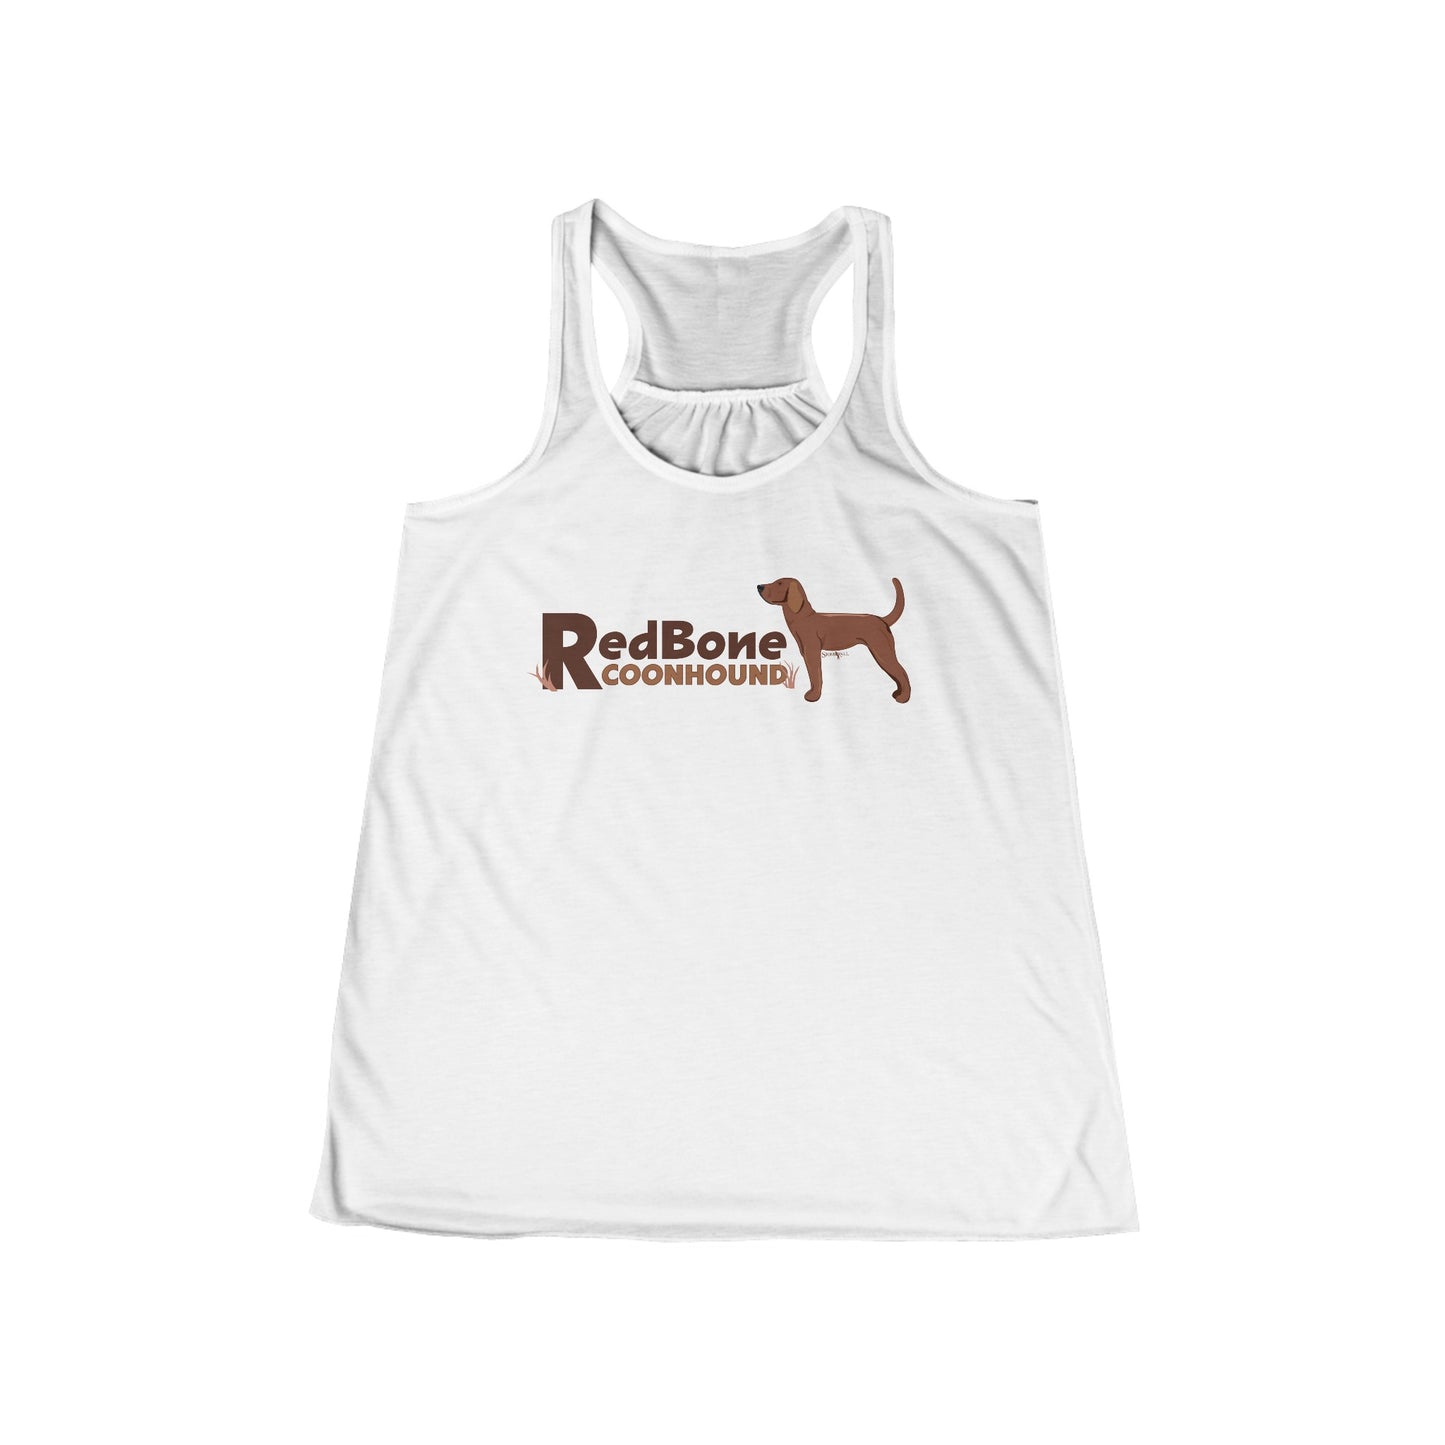 Redbone coonhound tank